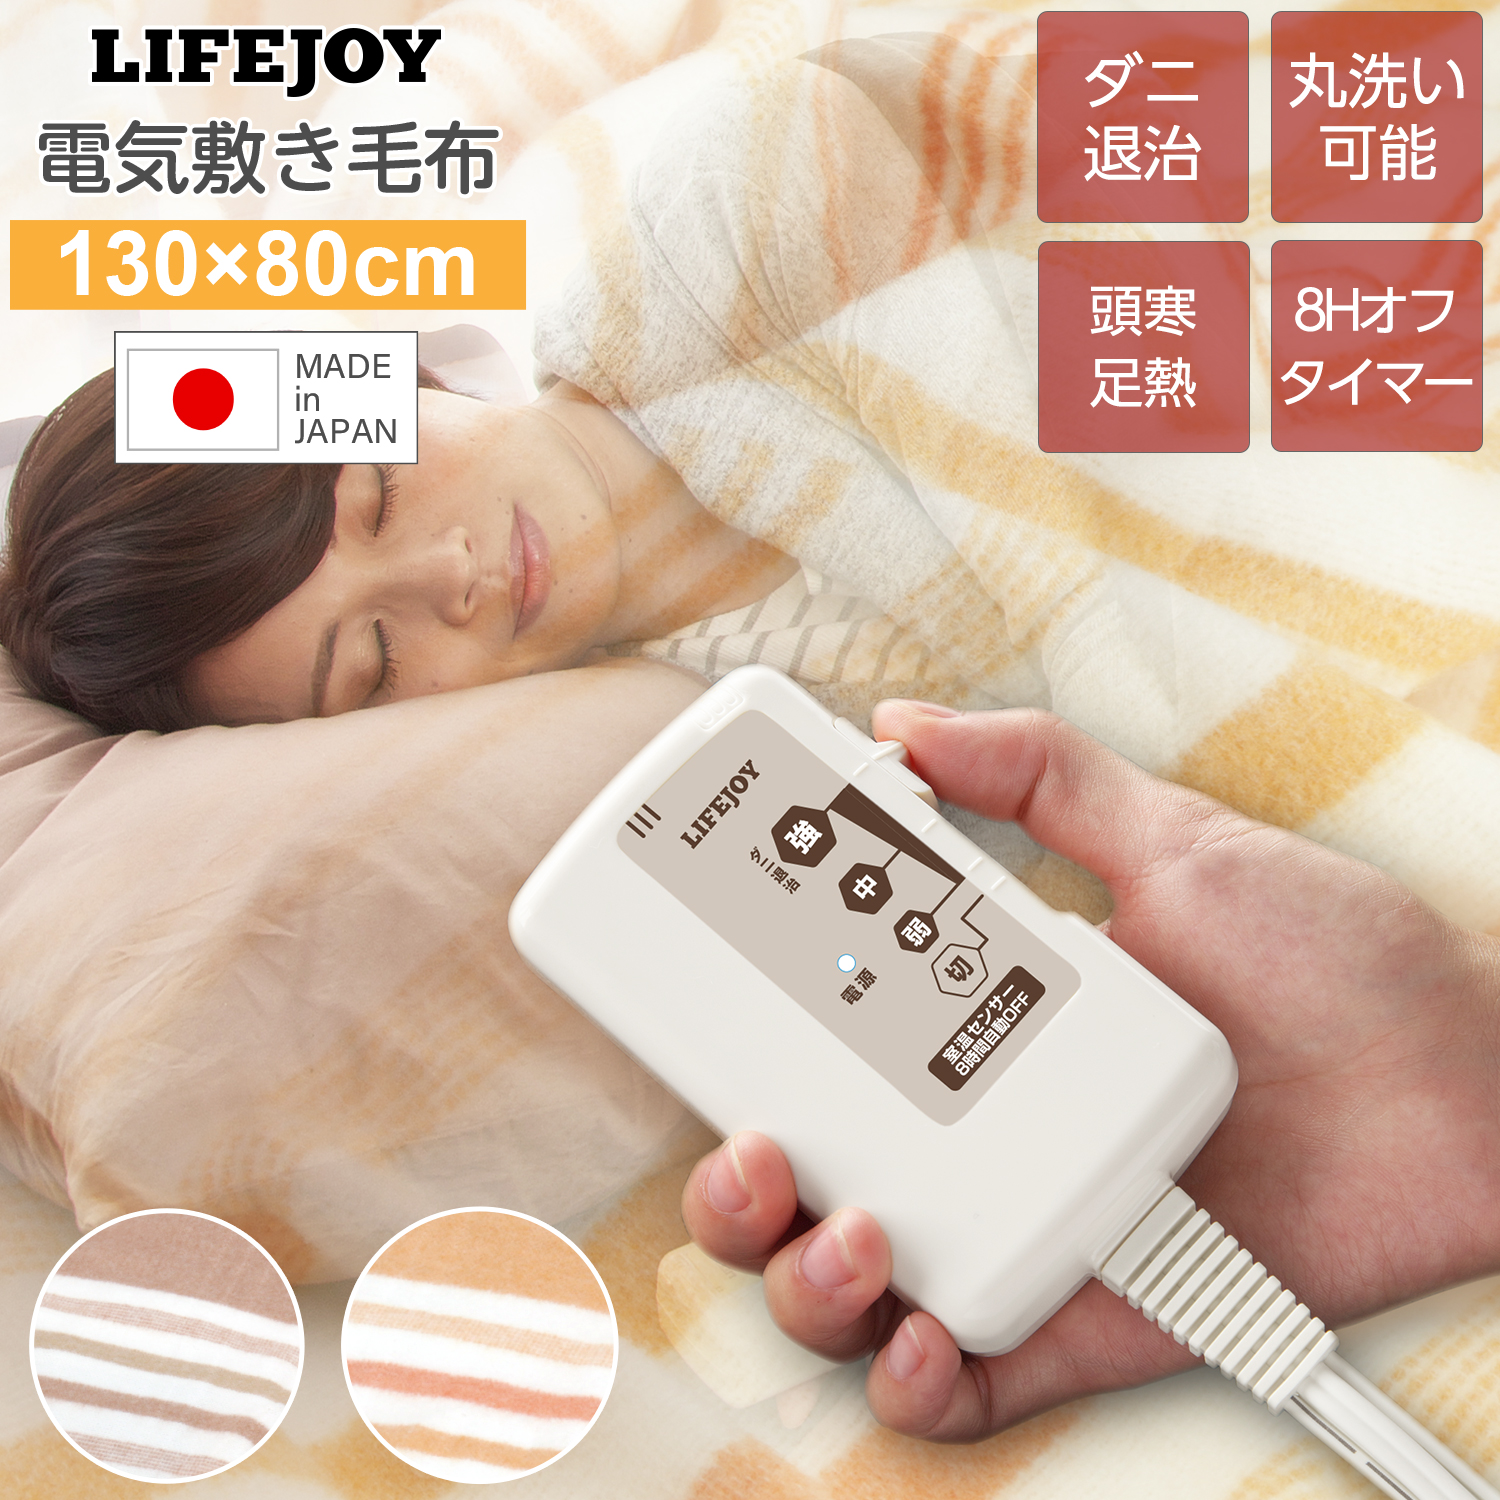 日本製 電気毛布 掛け敷き フランネル 188×130cm 洗濯可 ダニ退治 室温 